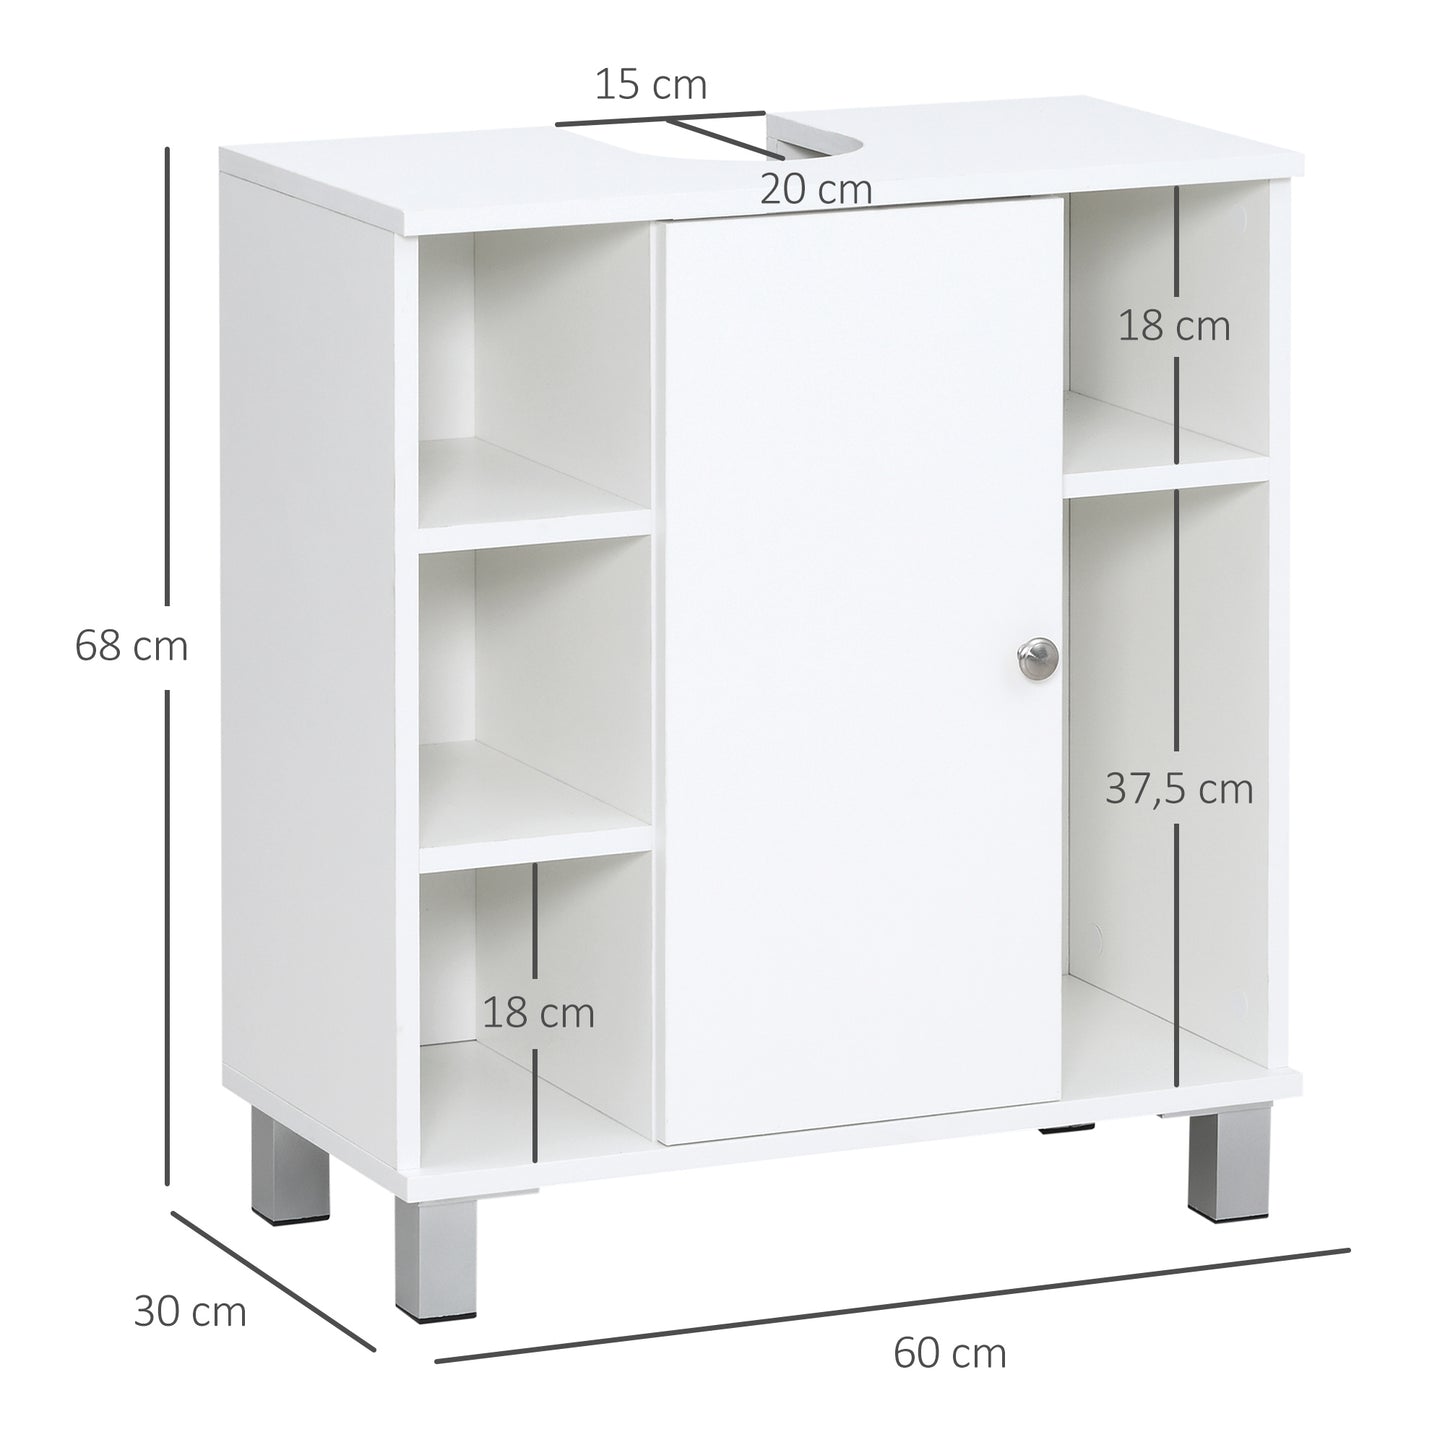 kleankin Mueble para Debajo del Lavabo Armario Baño de Suelo de Madera con 5 Compartimentos Abiertos y 1 Puerta Diseño Compacto Moderno 60x30x68 cm Blanco